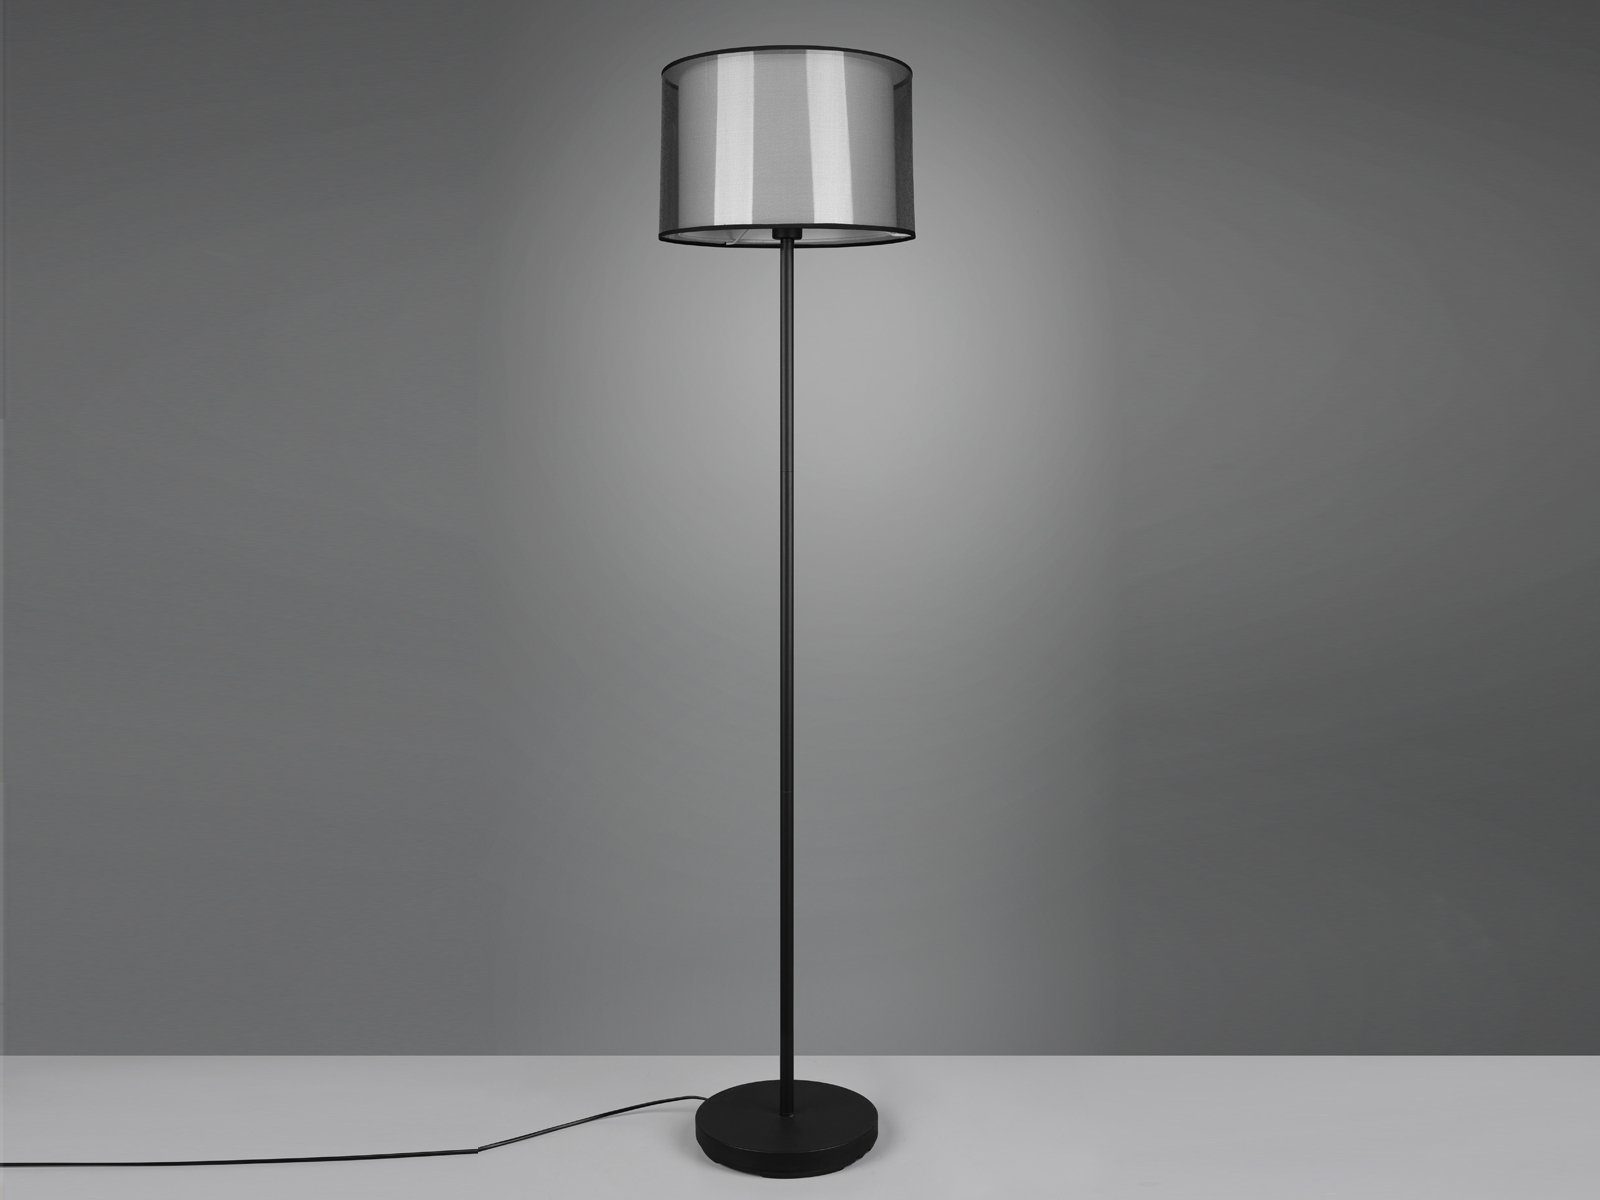 dimmbar H: meineWunschleuchte wechselbar, Lampe mit Stehlampe, Lampen-schirm, LED ausgefallene Stoff Warmweiß, LED Design-er 150cm